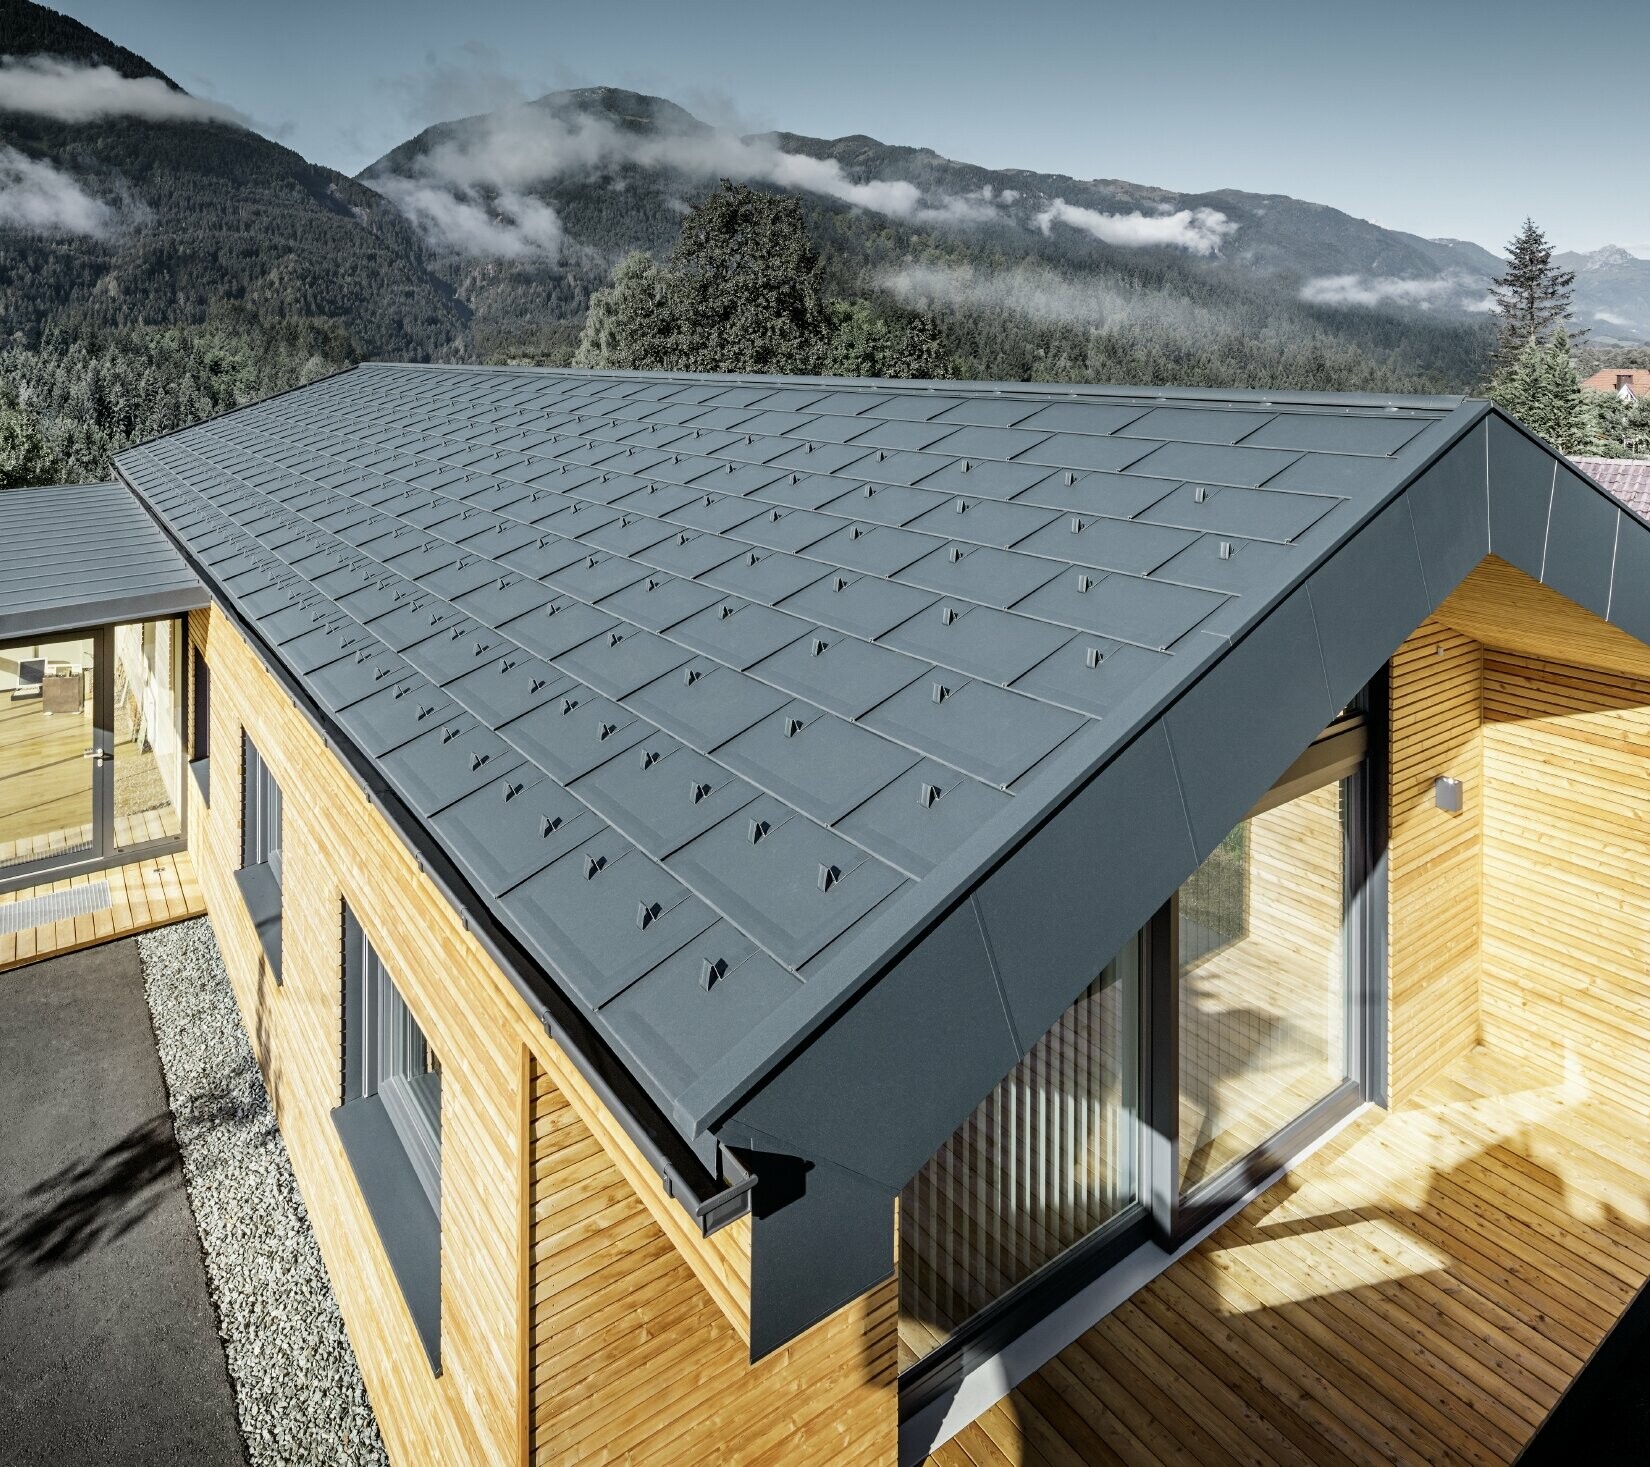 Nieuw kantoorgebouw van Holzbau Faltheiner met gevel van larikshout, royale raamoppervlakken en een PREFA dak in antraciet.